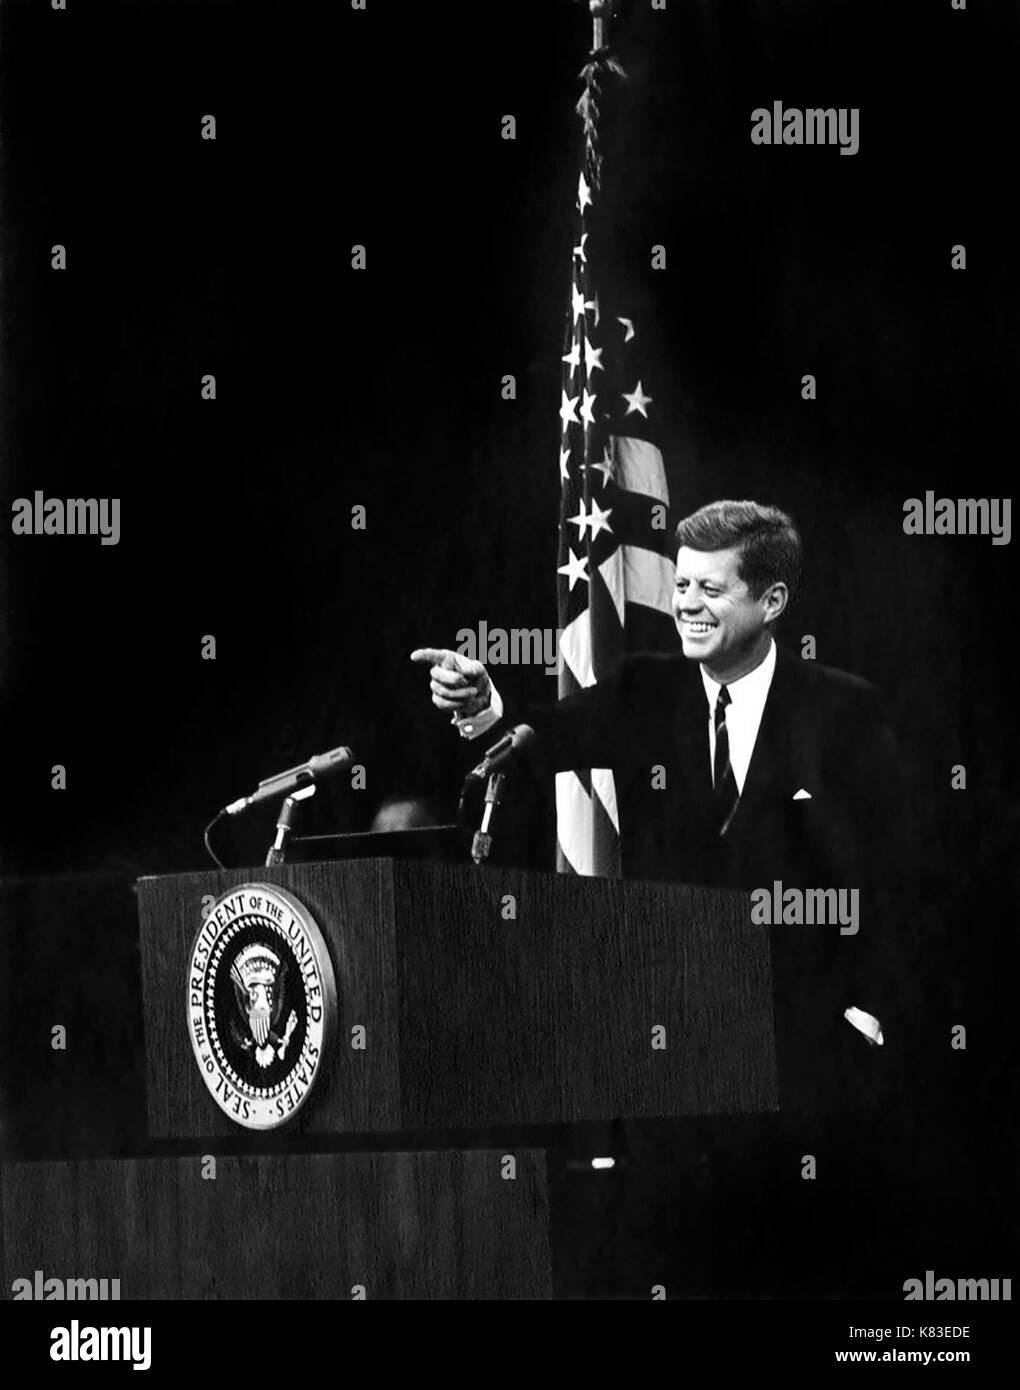 Präsidenten der Vereinigten Staaten John F. Kennedy, der auf einem Reporter während einer Pressekonferenz im Außenministerium Auditorium am 20. November 1962. (Foto von Abbie Rowe) Stockfoto